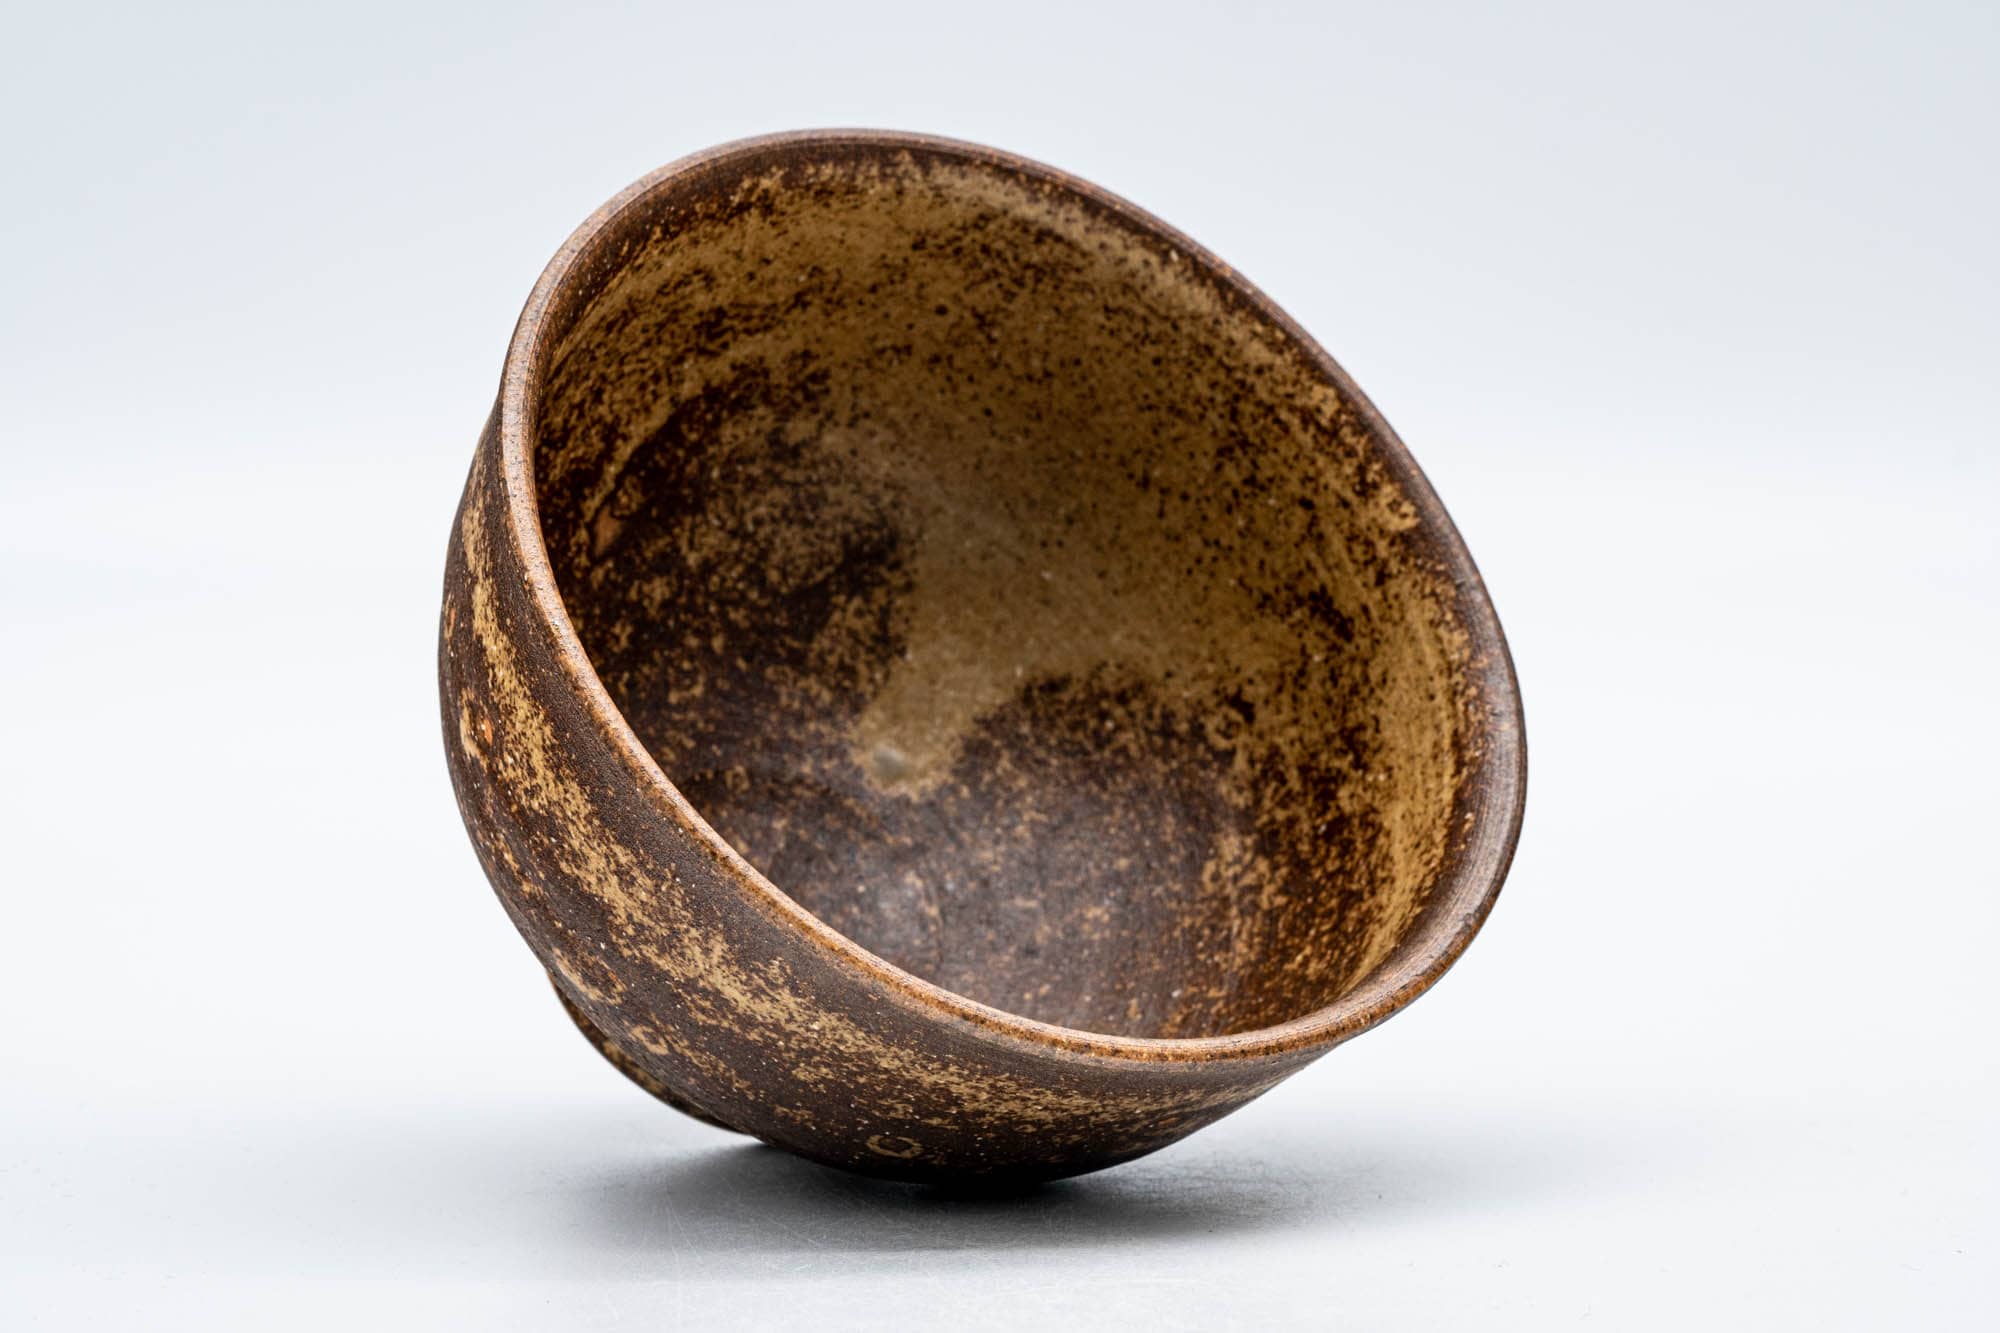 Japanese Matcha Bowl - 山口宏夢 Hiroshi Yamaguchi - 見谷窯 Midani Kiln - Ash Glazed Stoneware Seto-yaki Chawan - 300ml